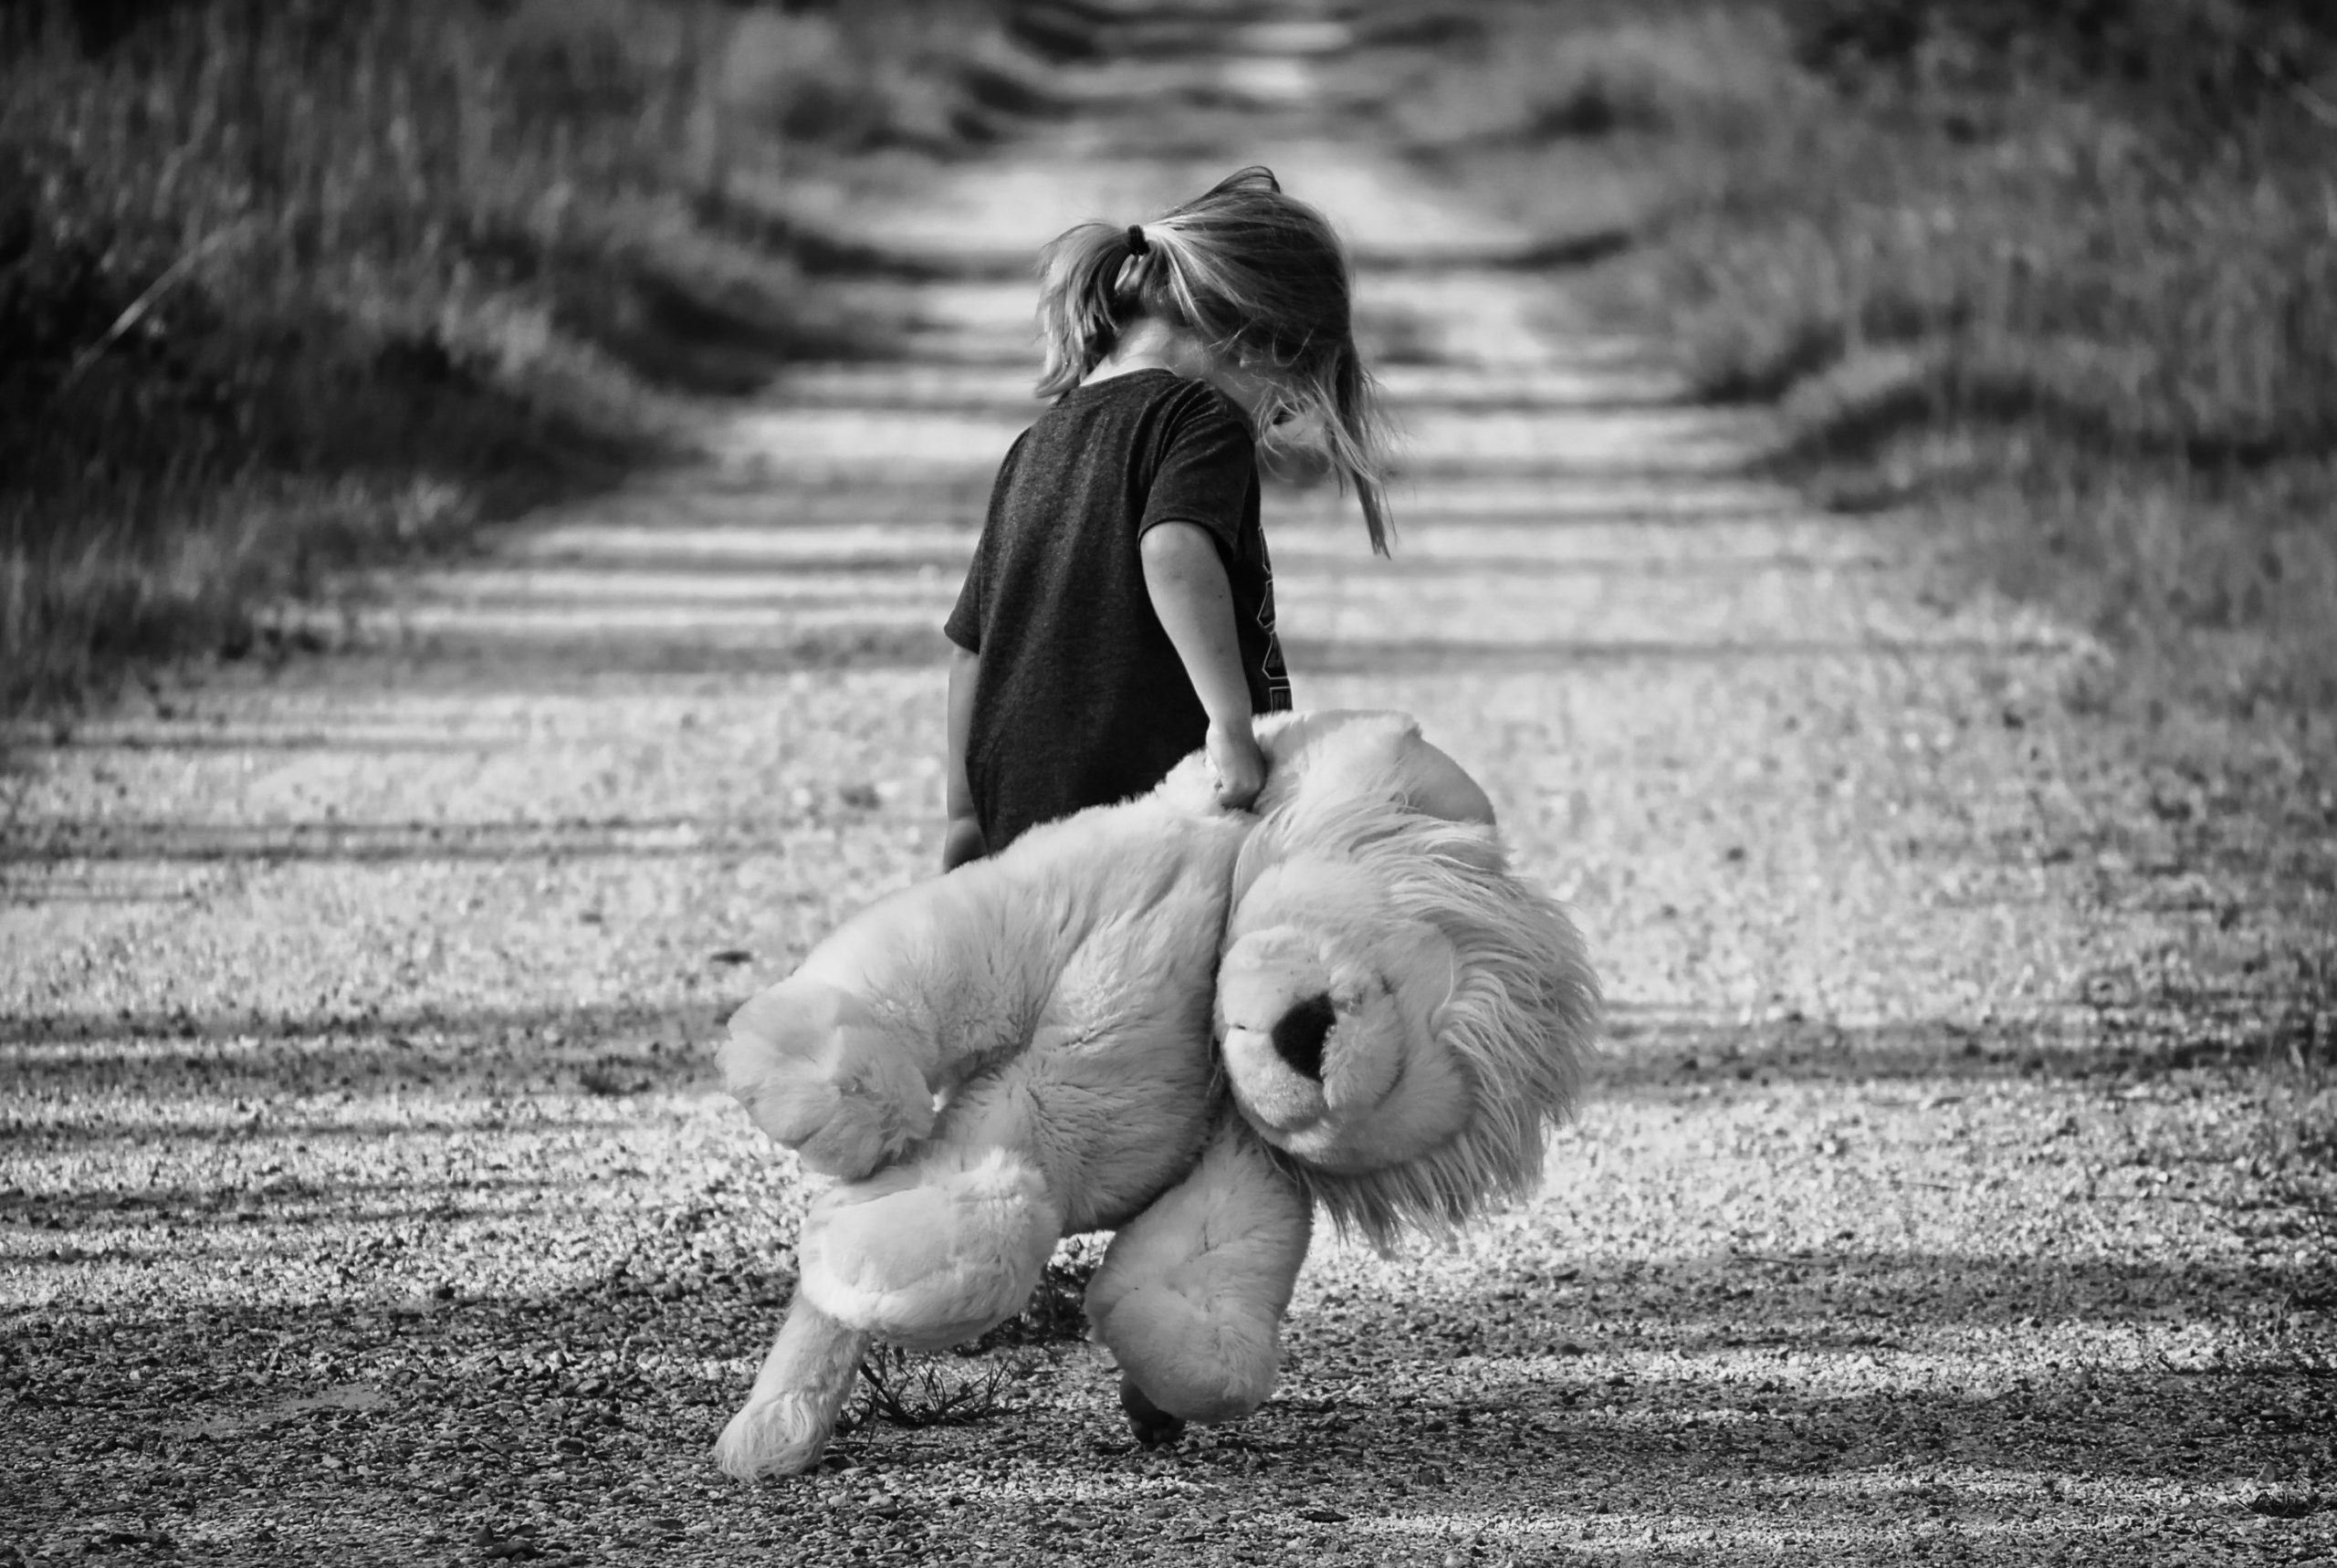 Criança sozinha em uma estrada, de costas e cabeça baixa, segurando um leão de pelúcia